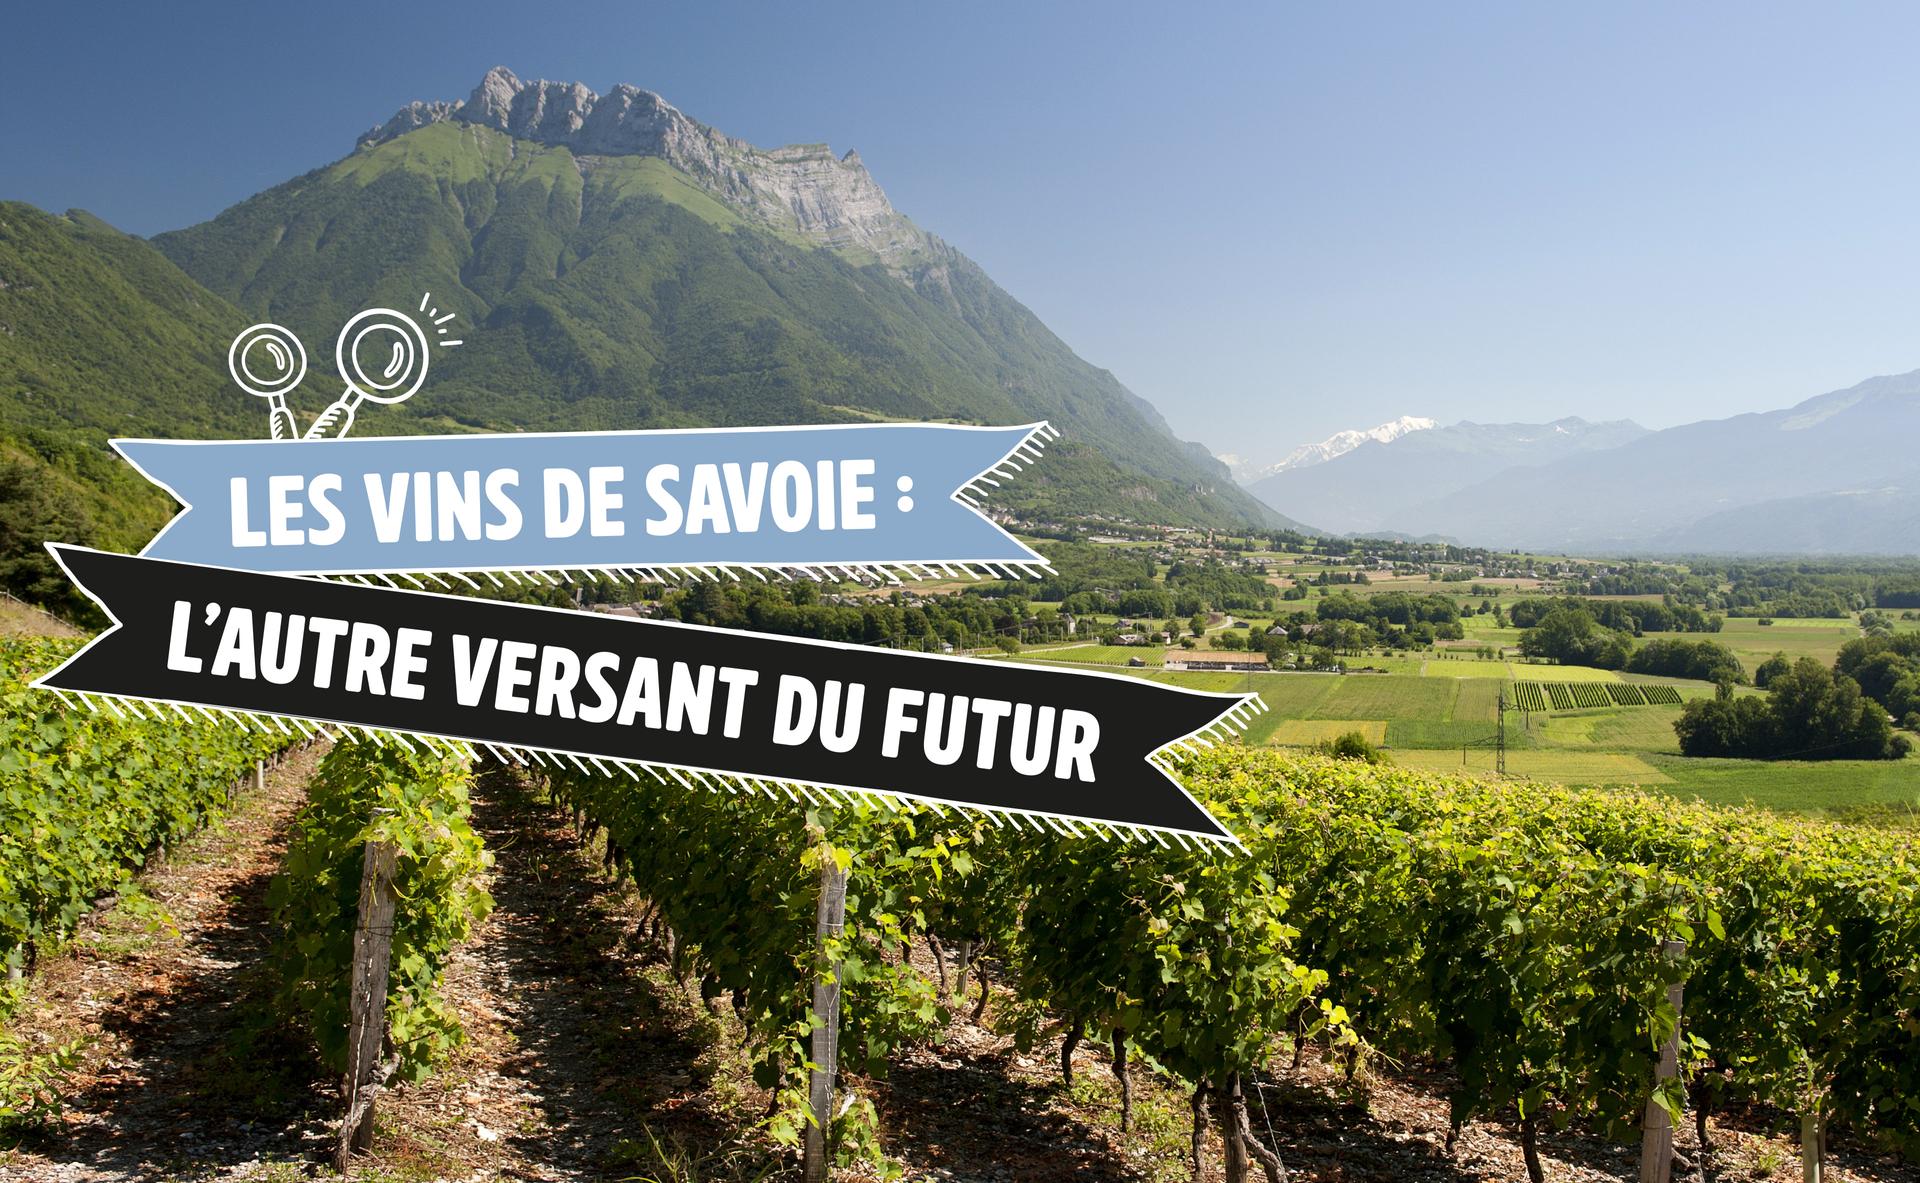 Les vins de Savoie : l'autre versant du futur